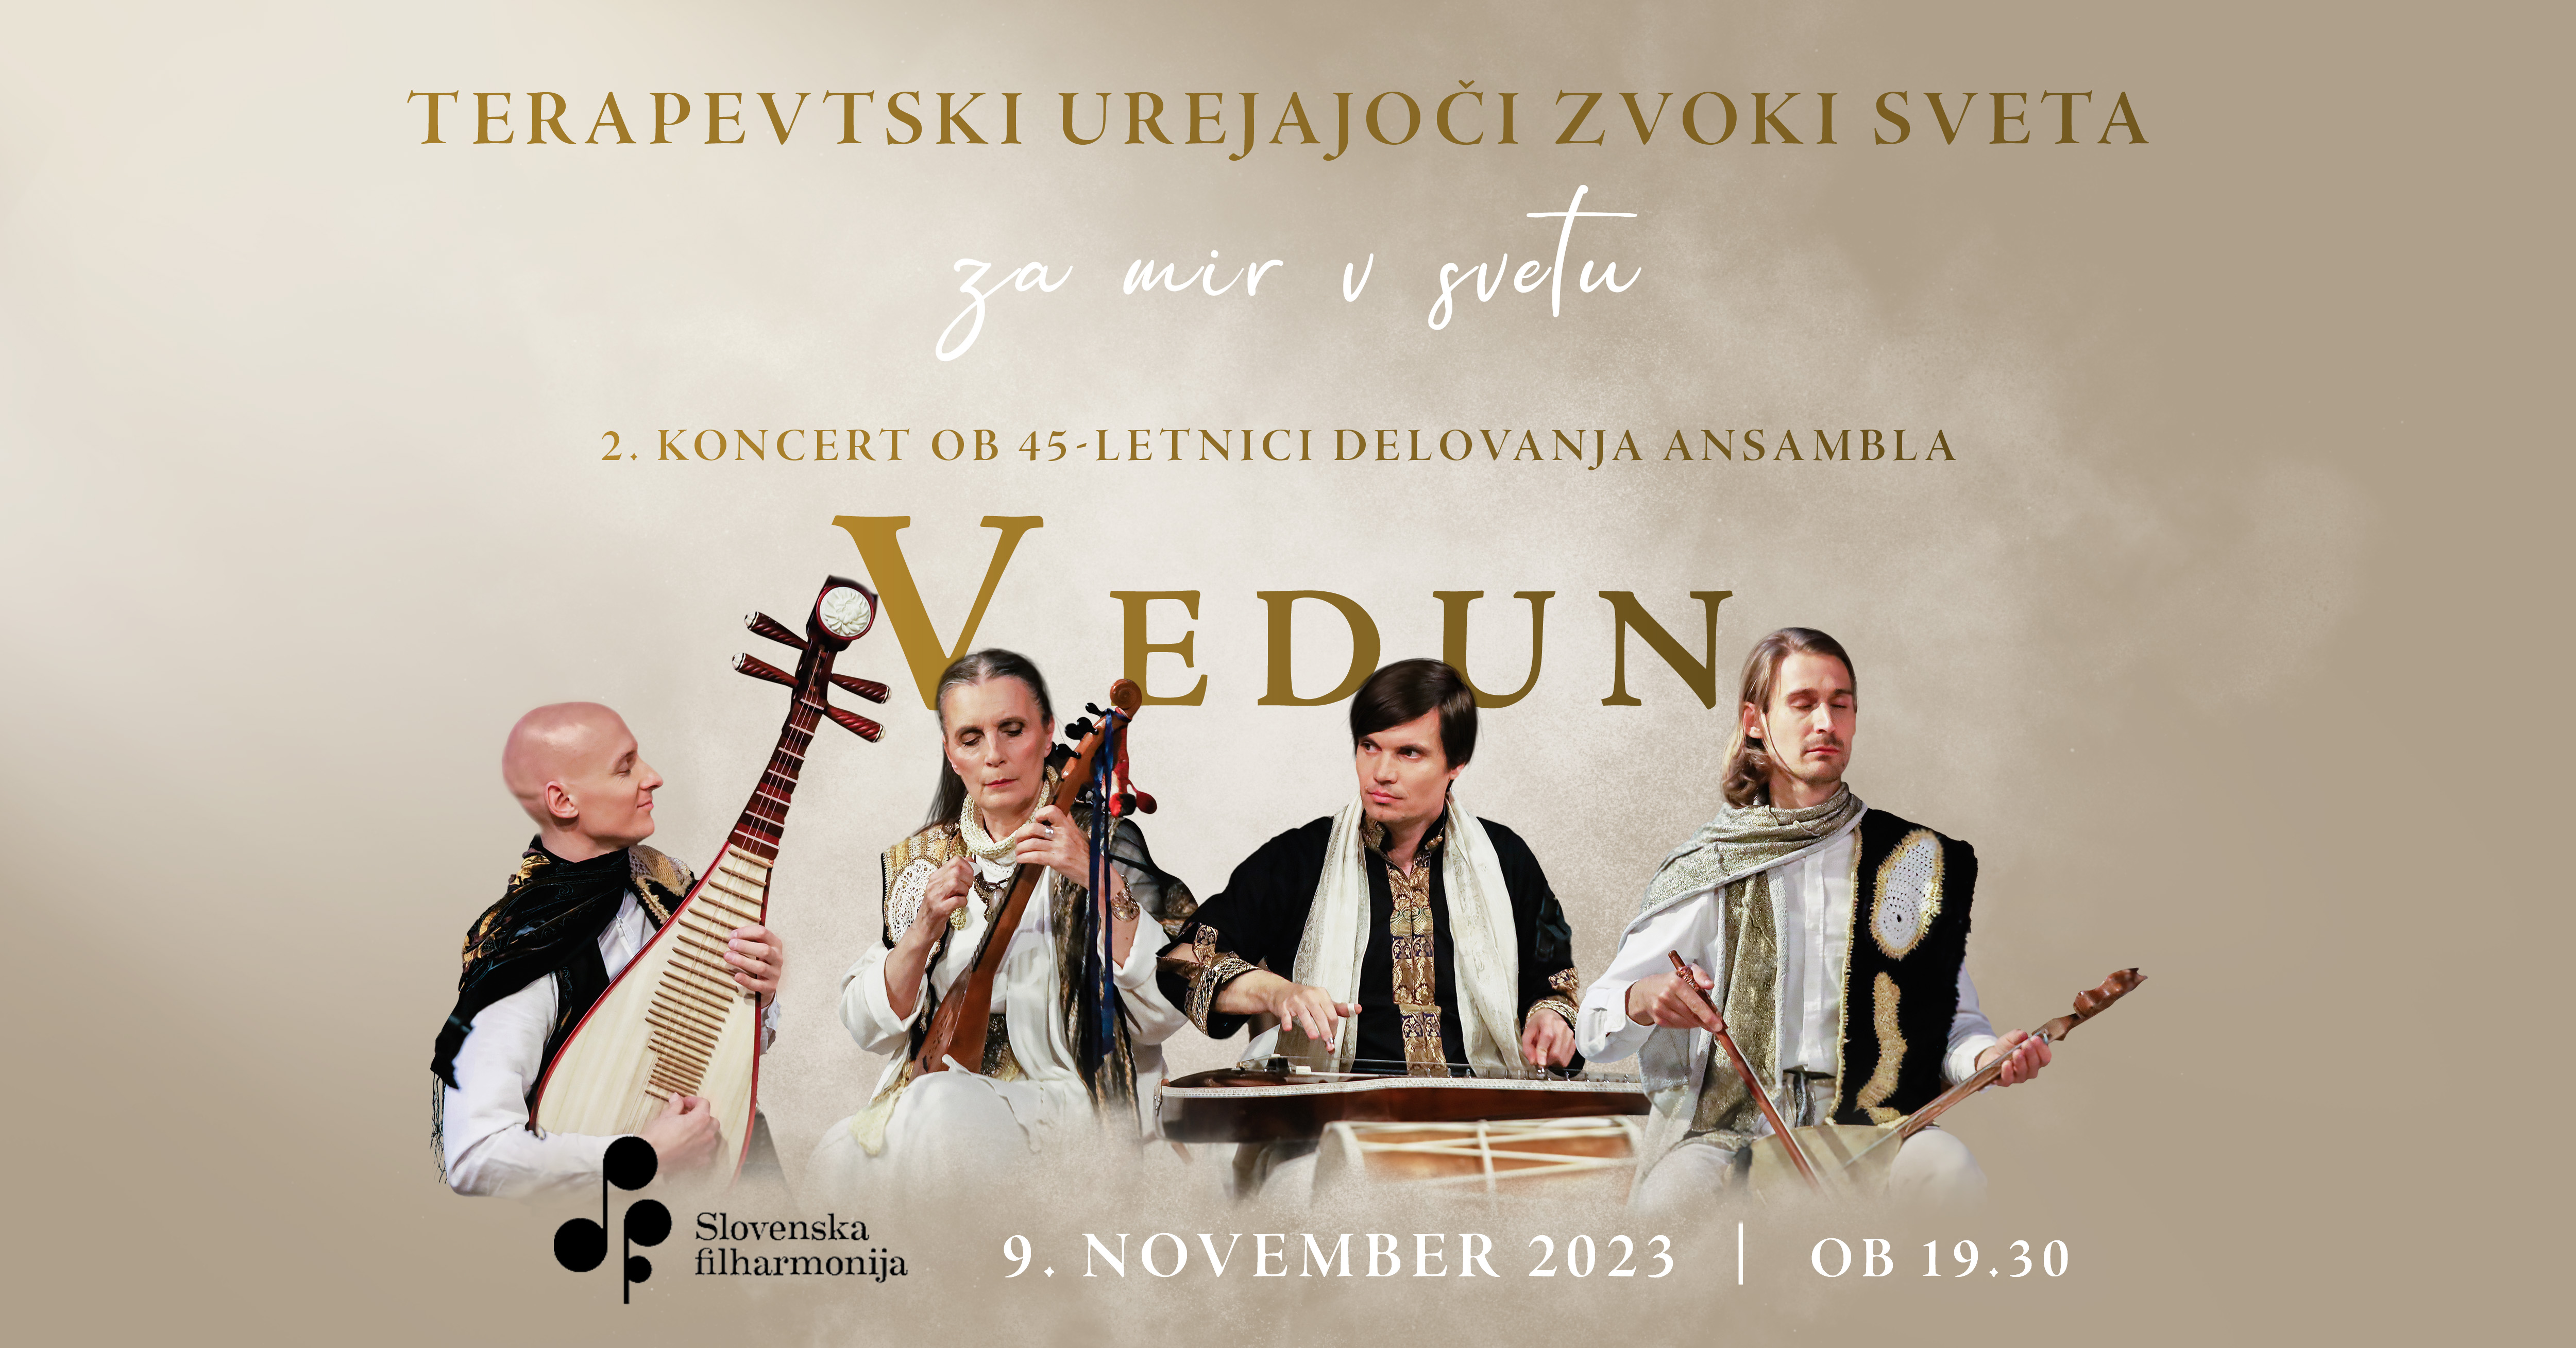 Biglietti per TERAPEVTSKI UREJAJOČI ZVOKI SVETA, 09.11.2023 al 19:30 at Dvorana Marjana Kozine, Slovenska filharmonija - Ljubljana